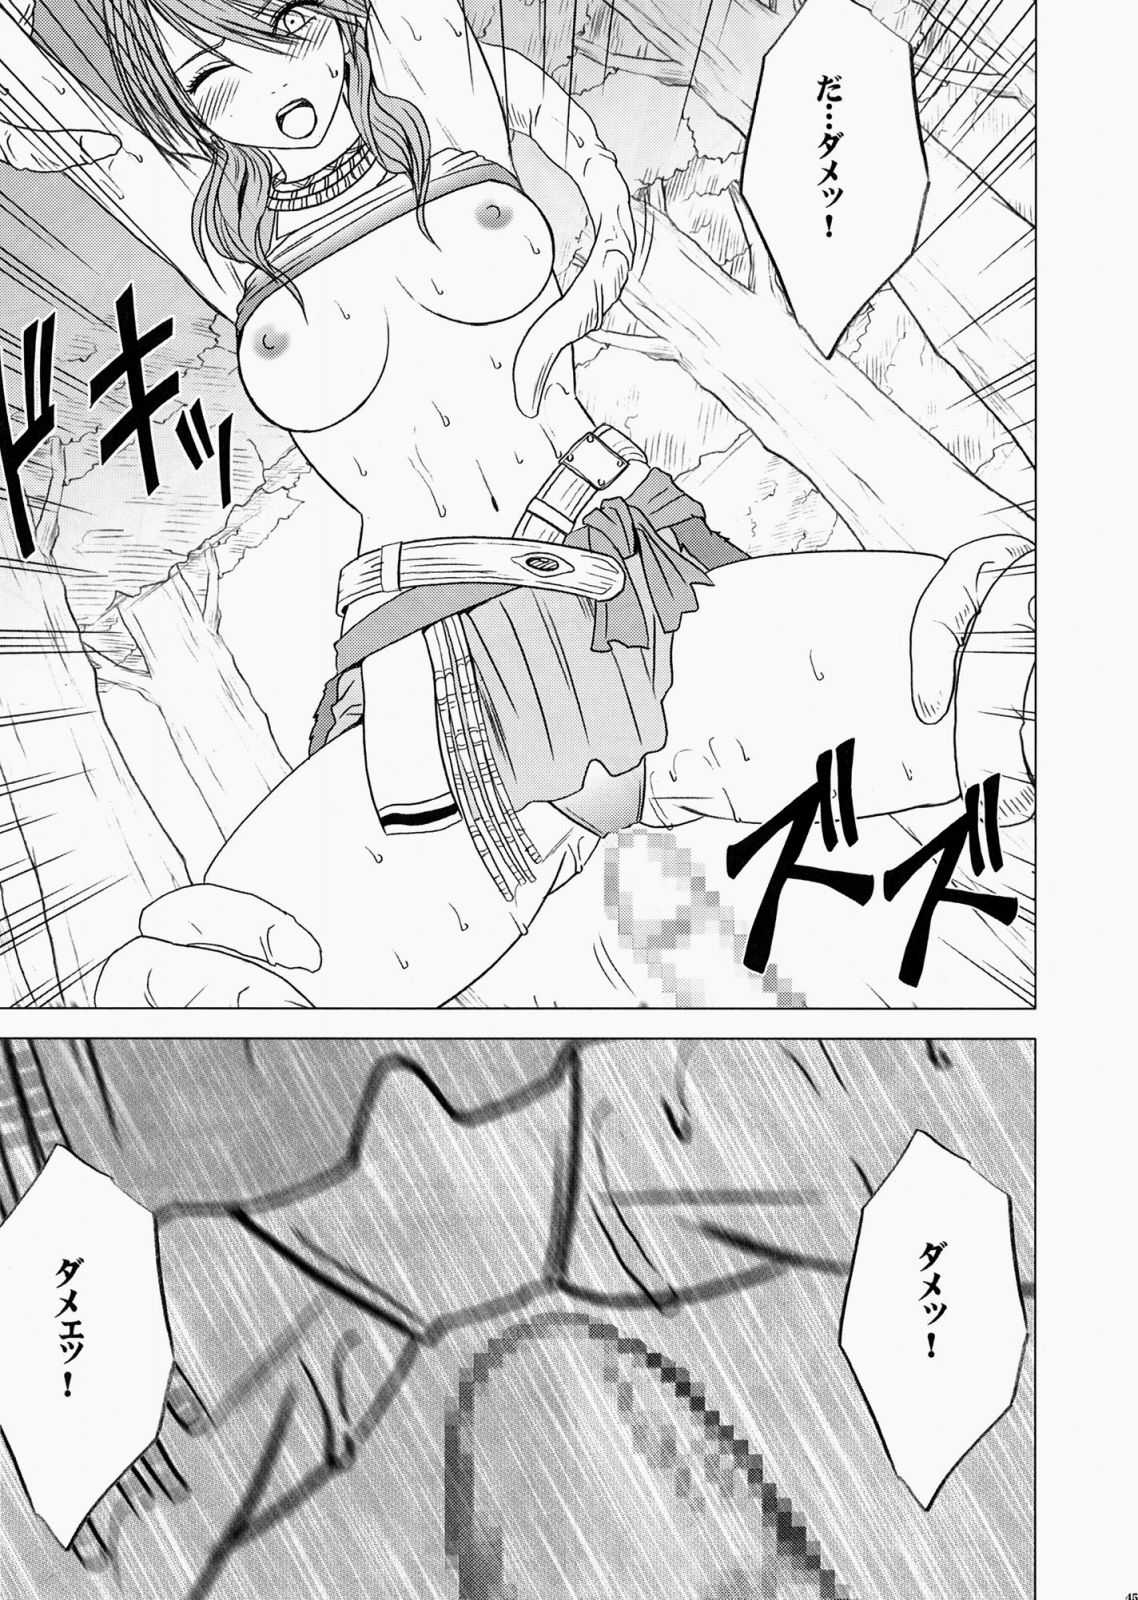 [Crimson Comics] Watashi wa mou Nigerrarenai (Final Fantasy XIII) 